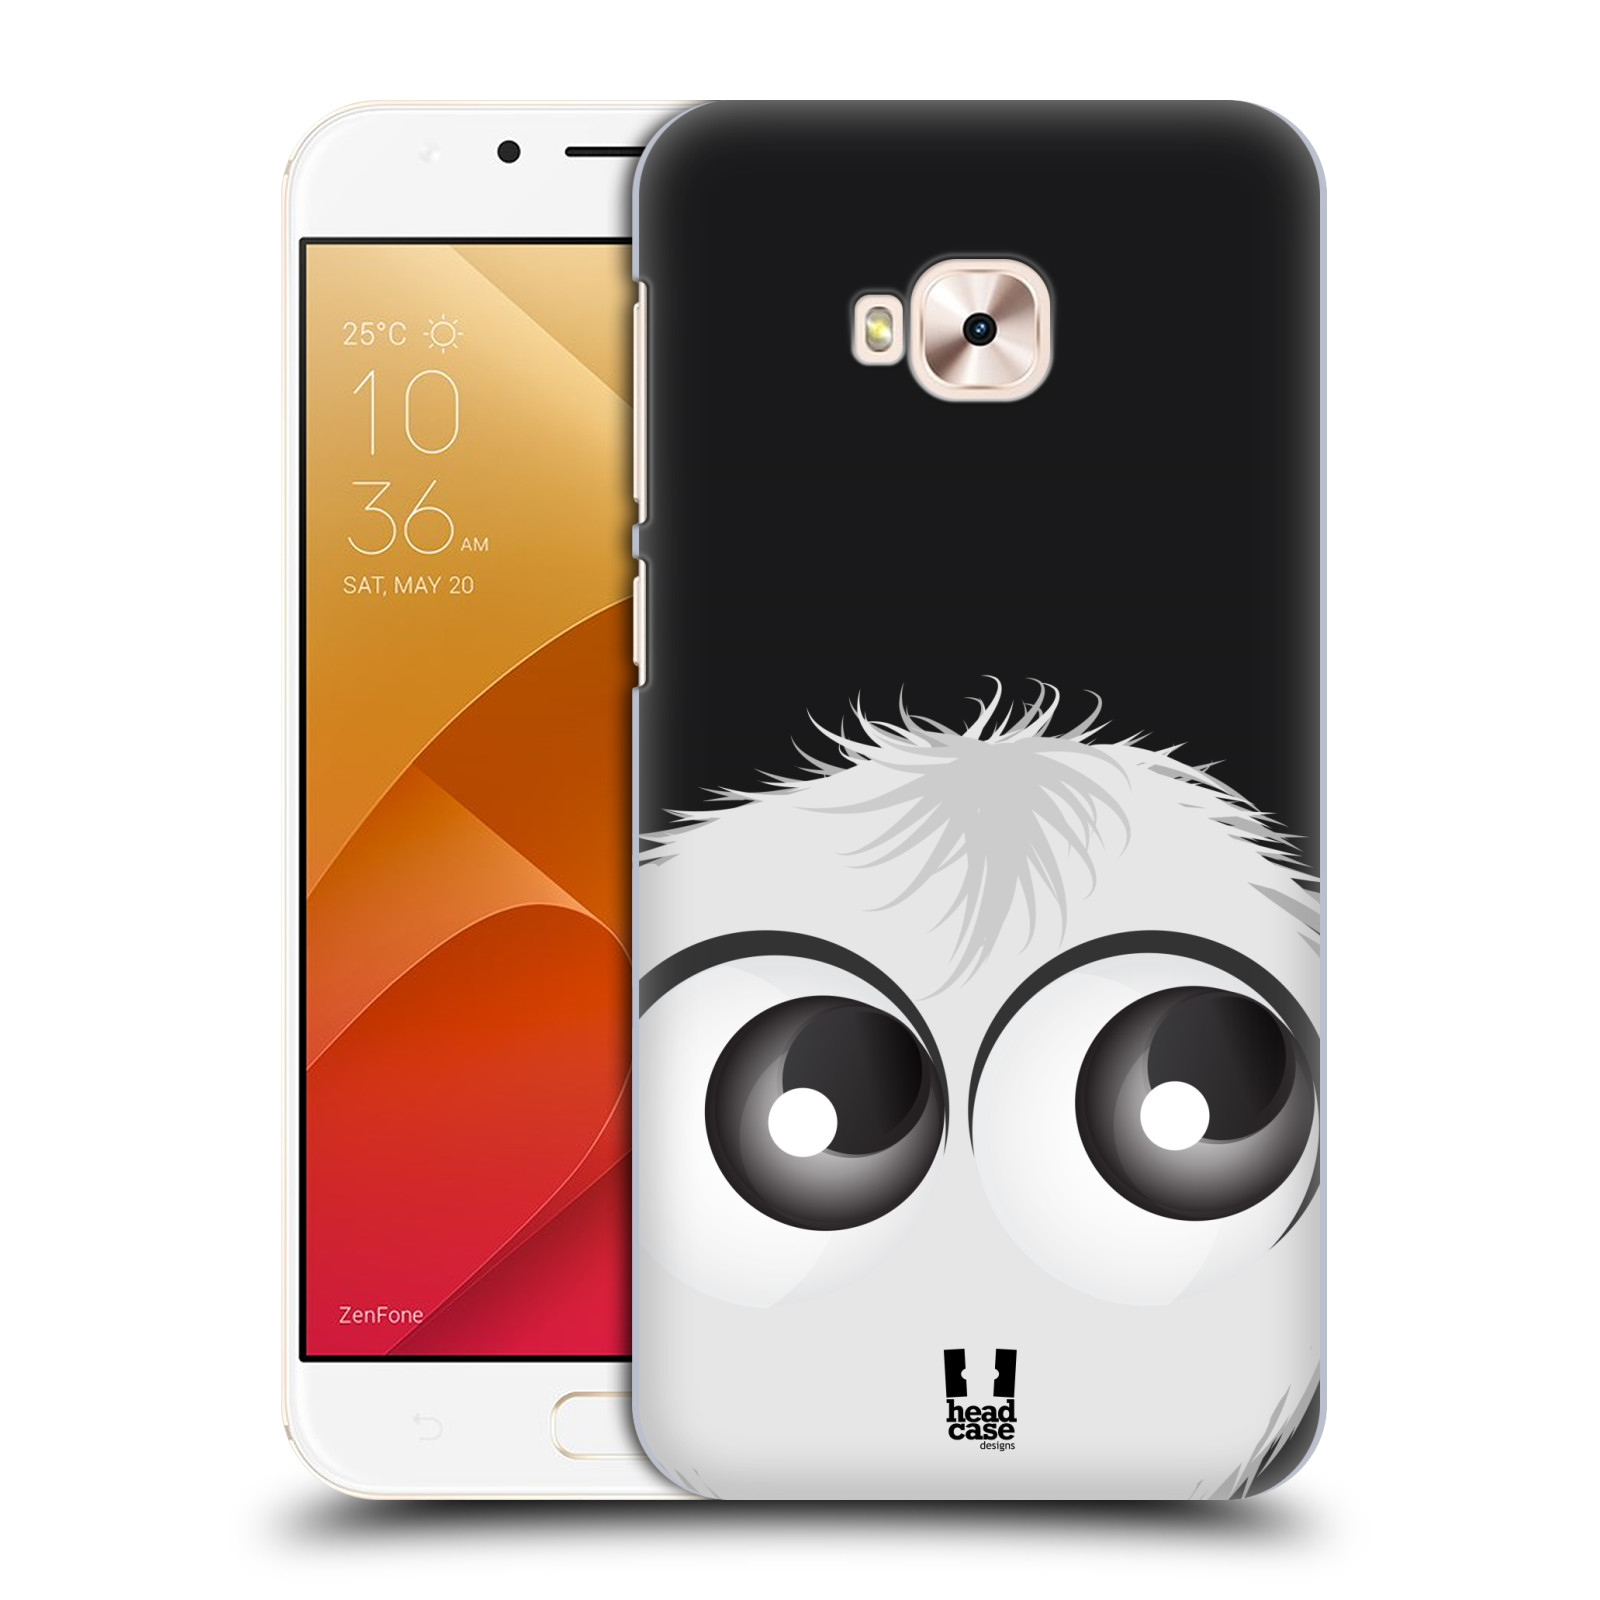 HEAD CASE plastový obal na mobil Asus Zenfone 4 Selfie Pro ZD552KL vzor Barevný chlupatý smajlík BÍLÁ černé pozadí